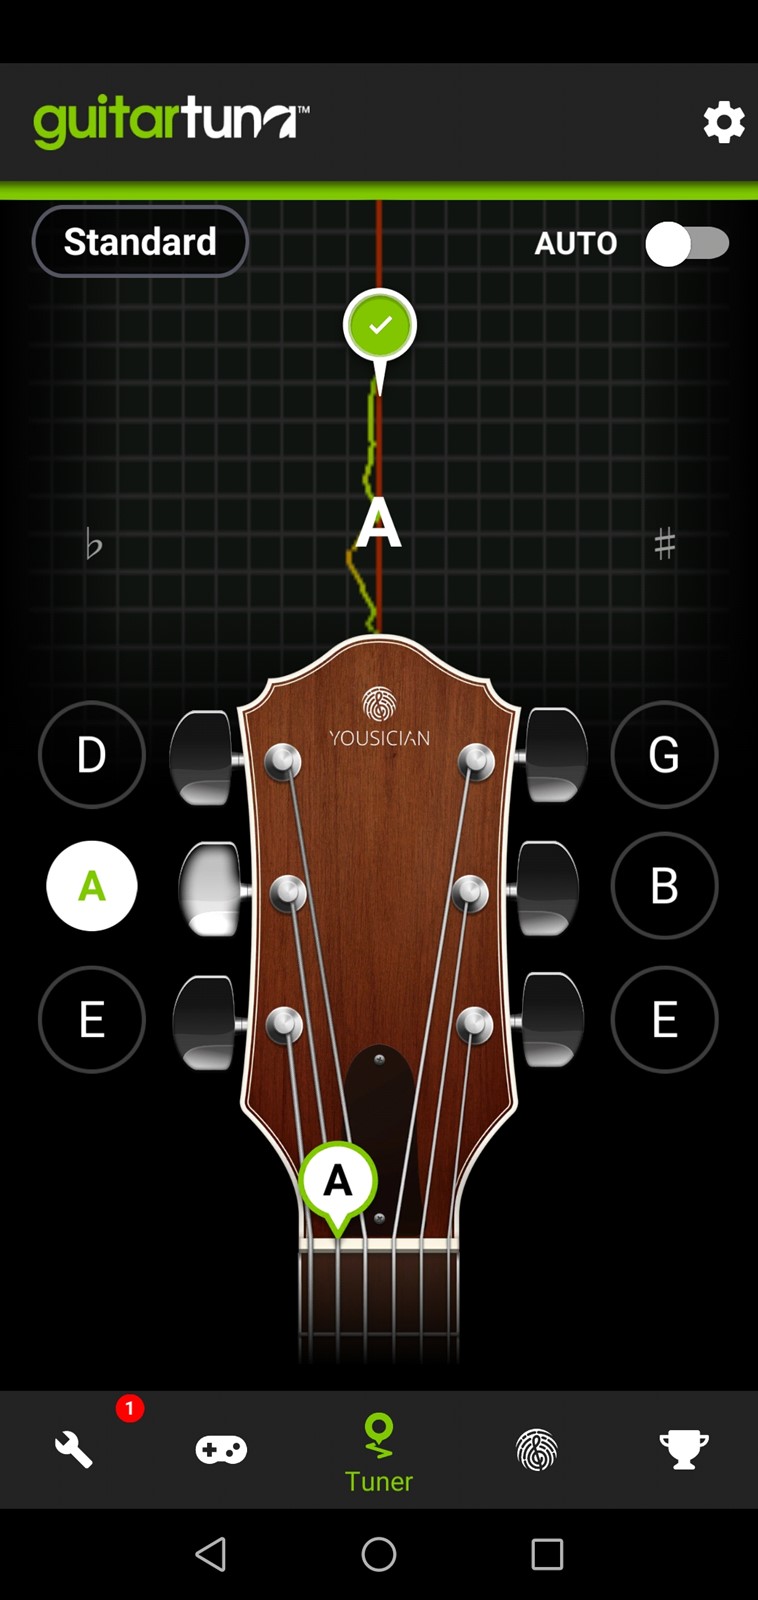 Najbolji glazbeni štimer na mobitelu - GuitarTuna - App dana @ Bug.hr